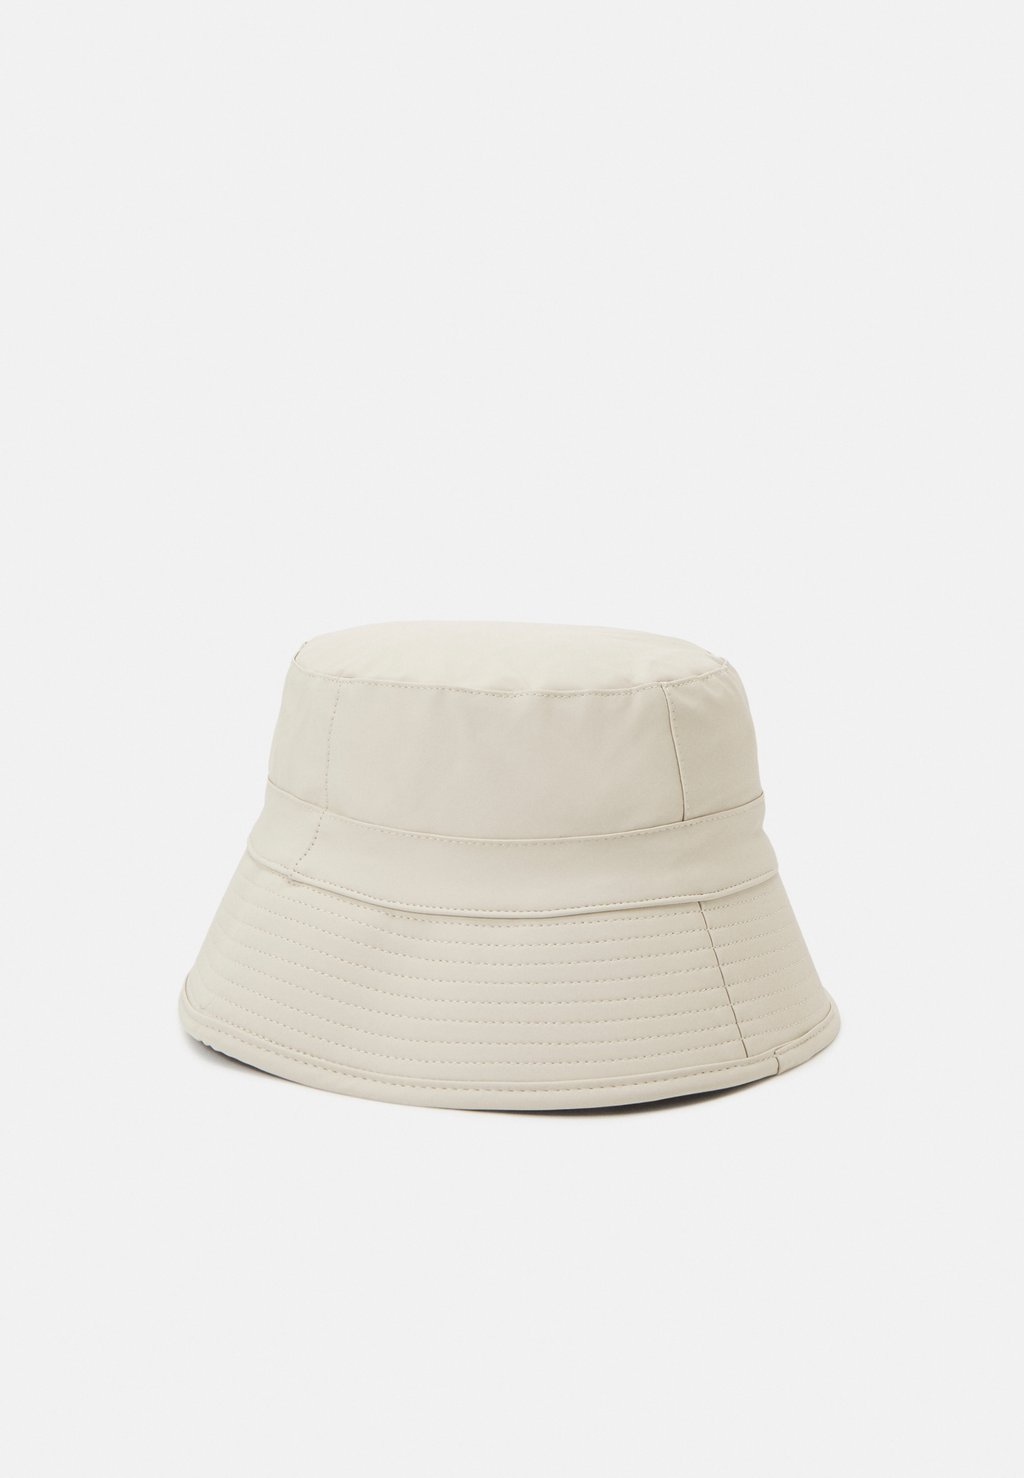 Панама BUCKET HAT UNISEX Rains, цвет dune панама linear logo bucket hat unisex tommy jeans цвет denim